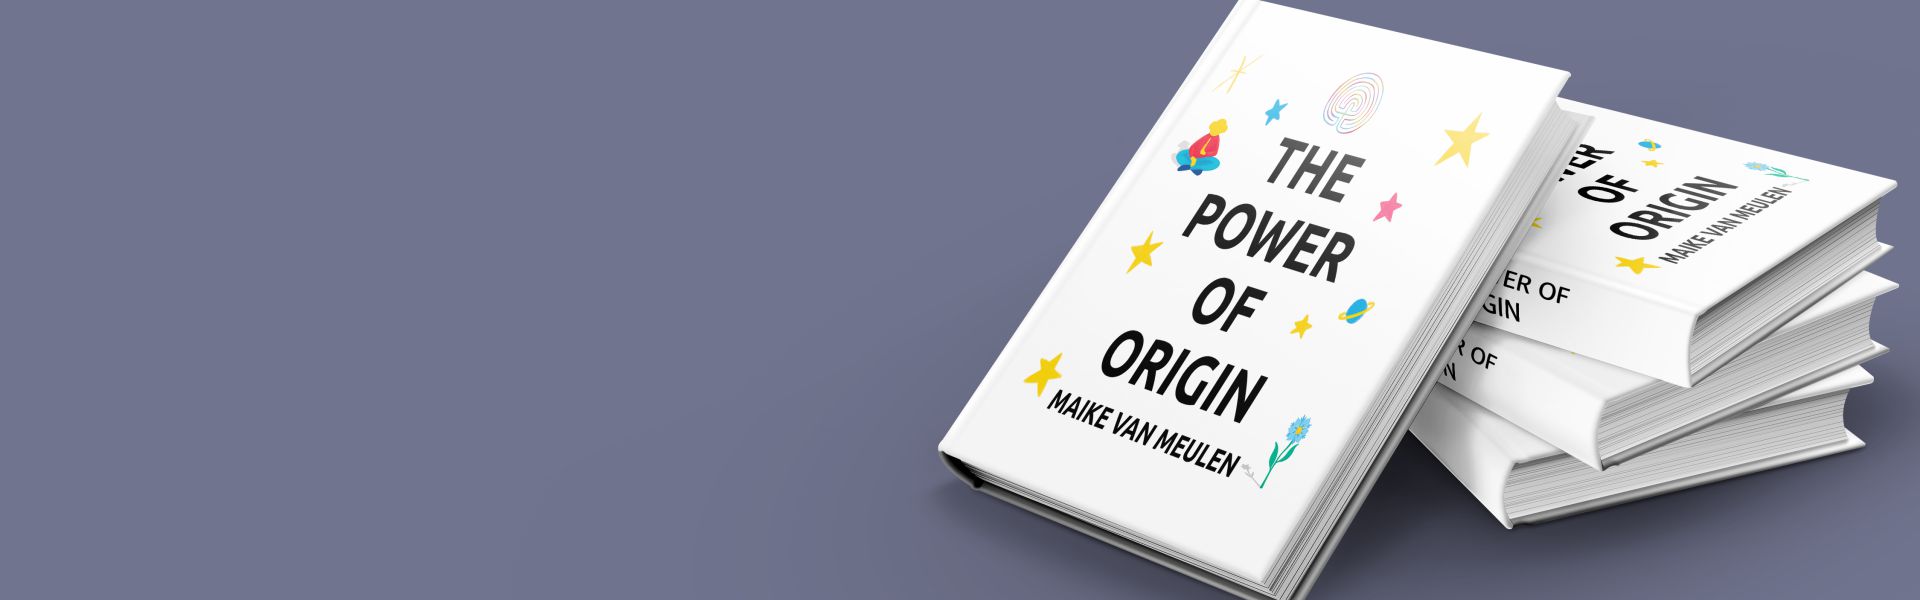 The Power of Origin: Bloei vanuit je volledige potentie